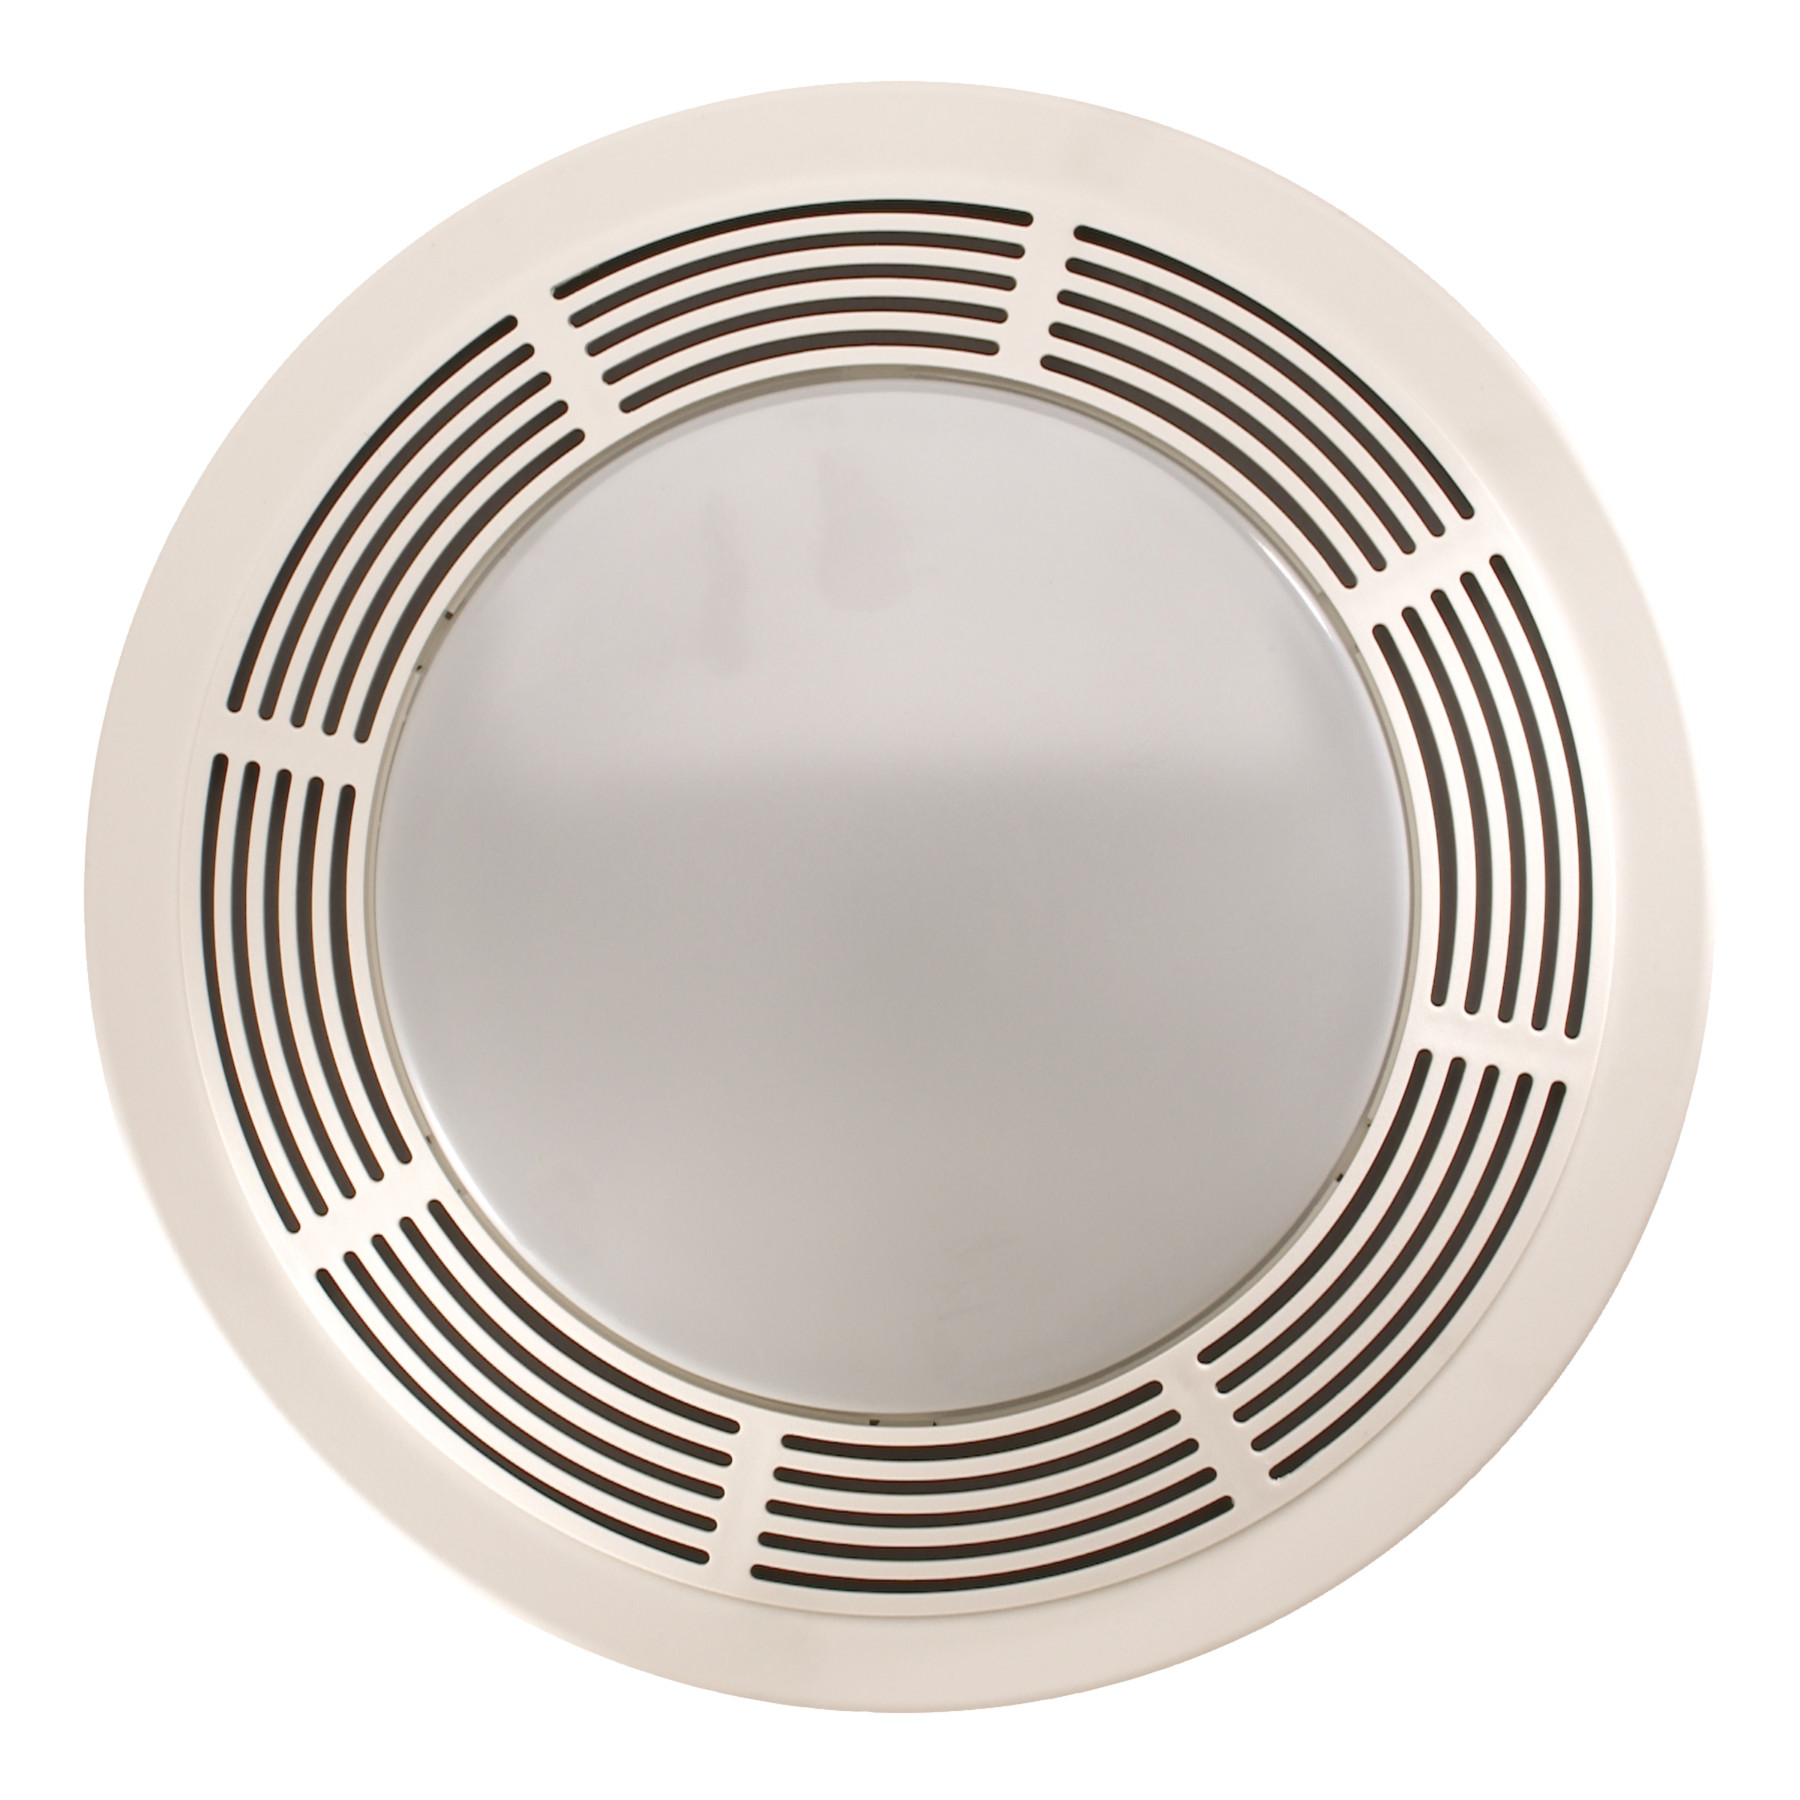 750 Broan Ventilation Fan W Light And